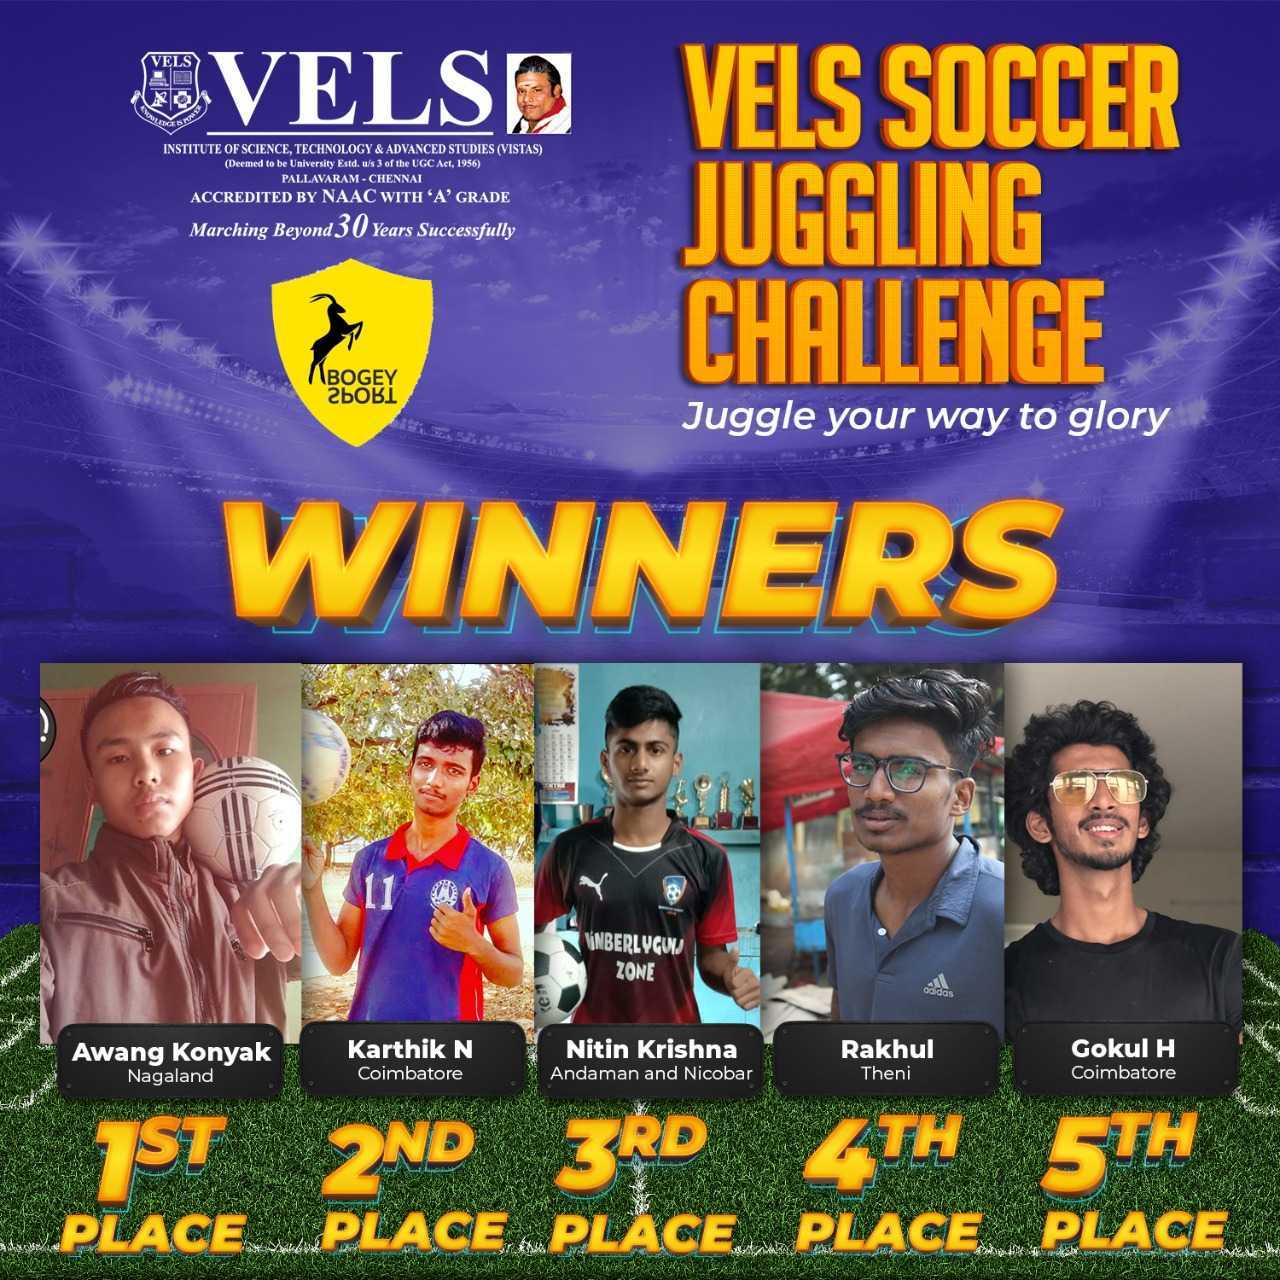 Vels Soccer Juggling challenge - Online event